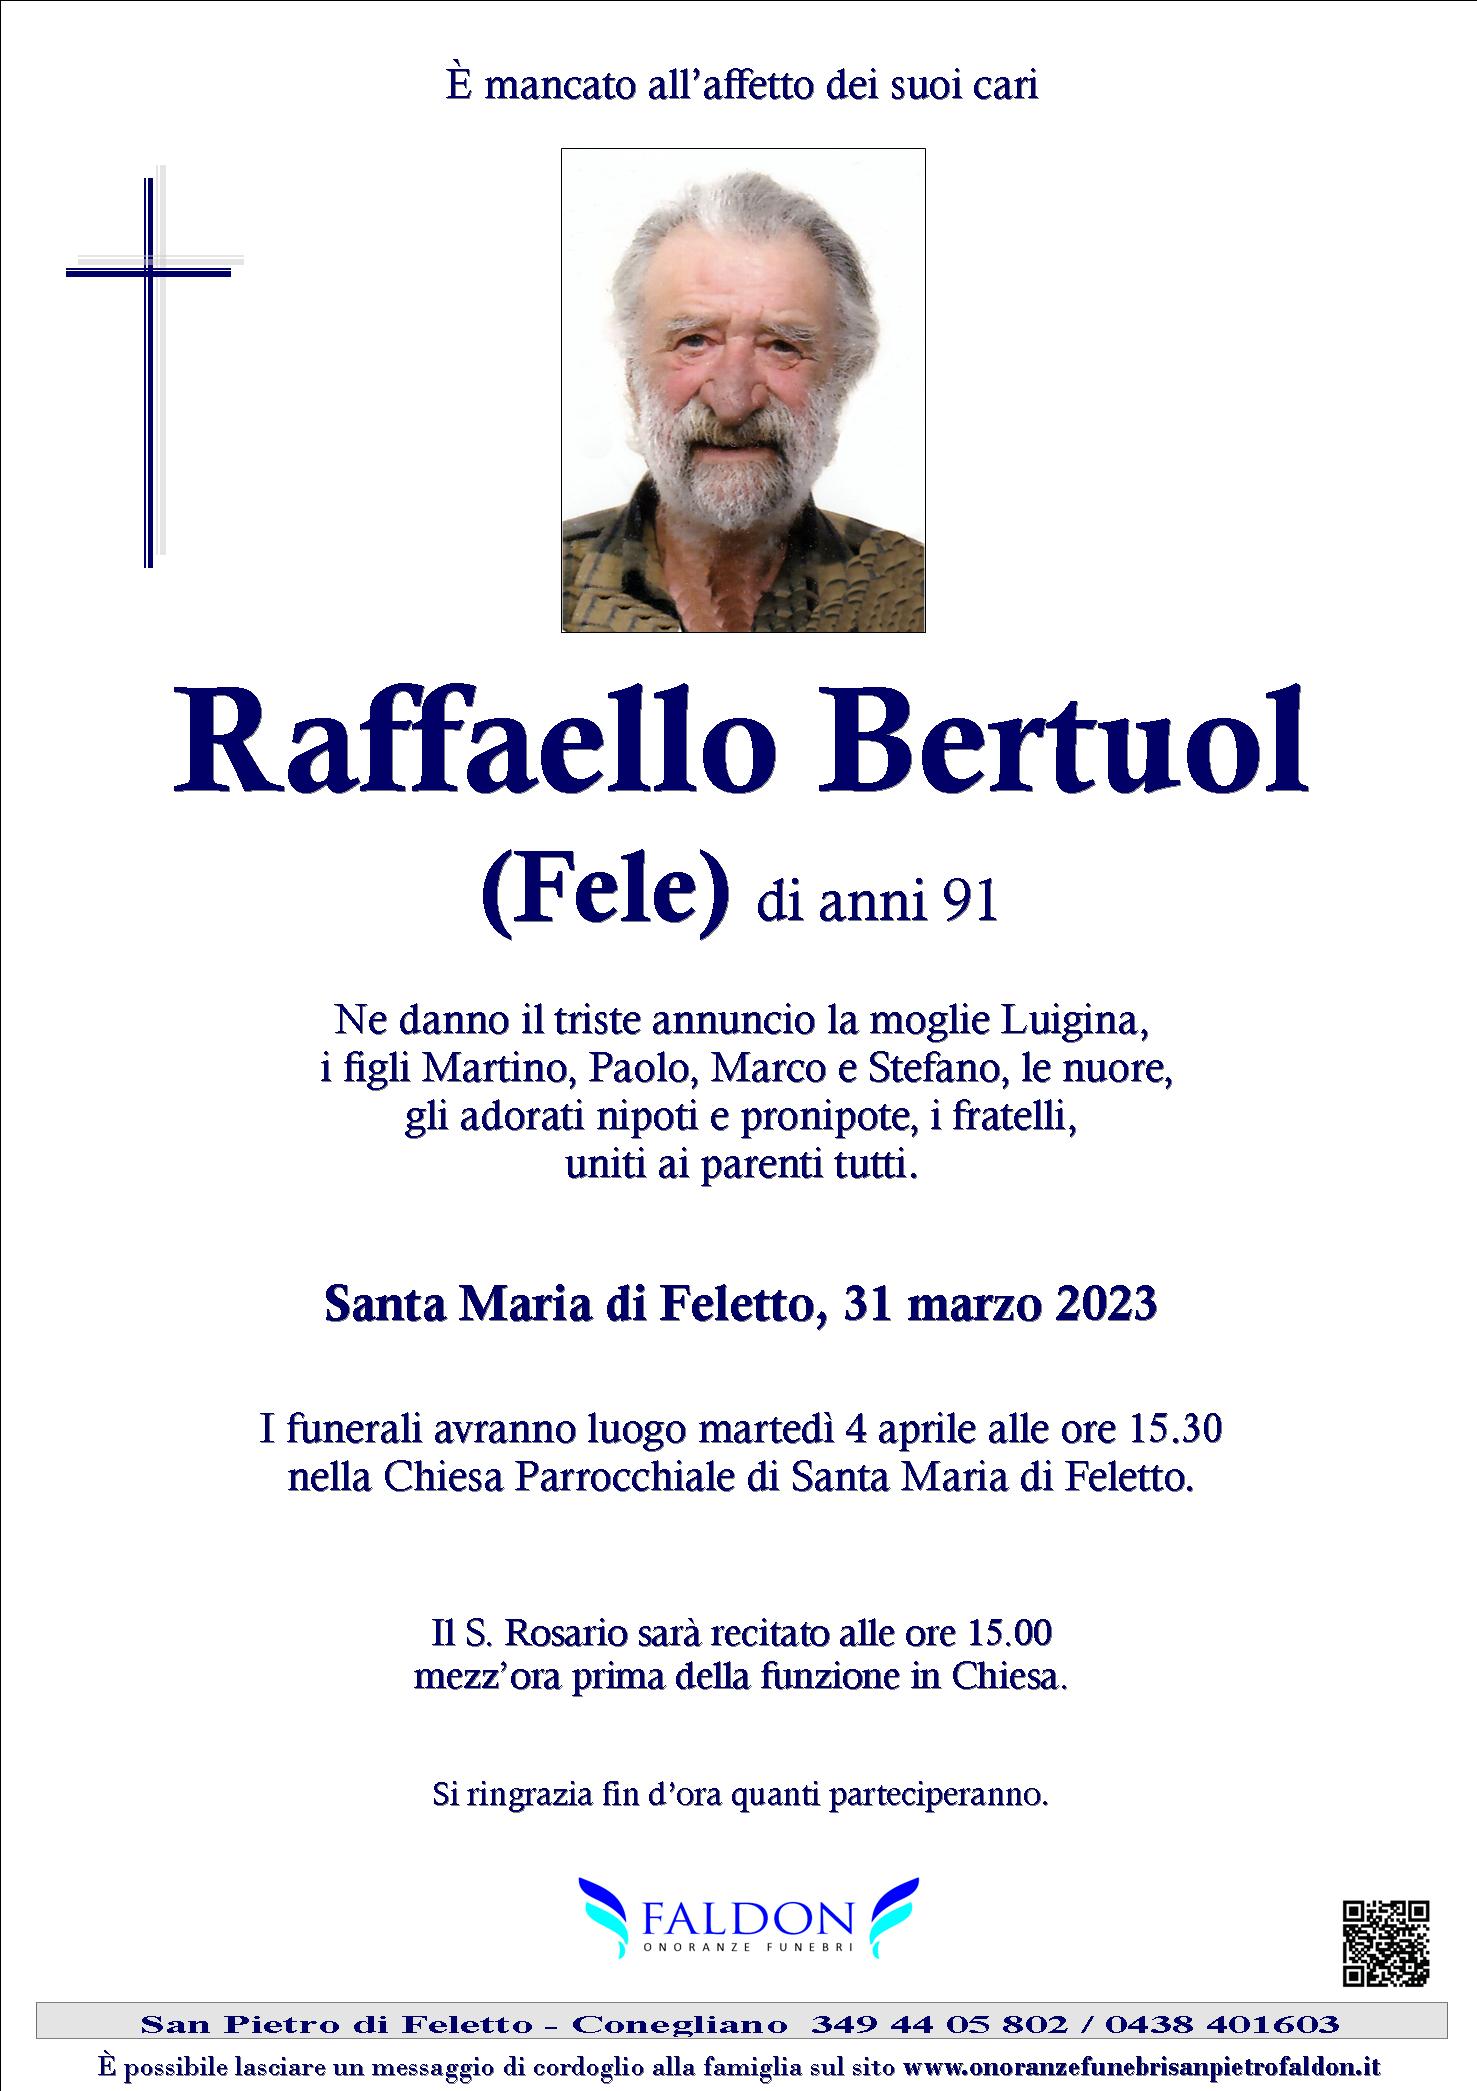 Raffaello Bertuol